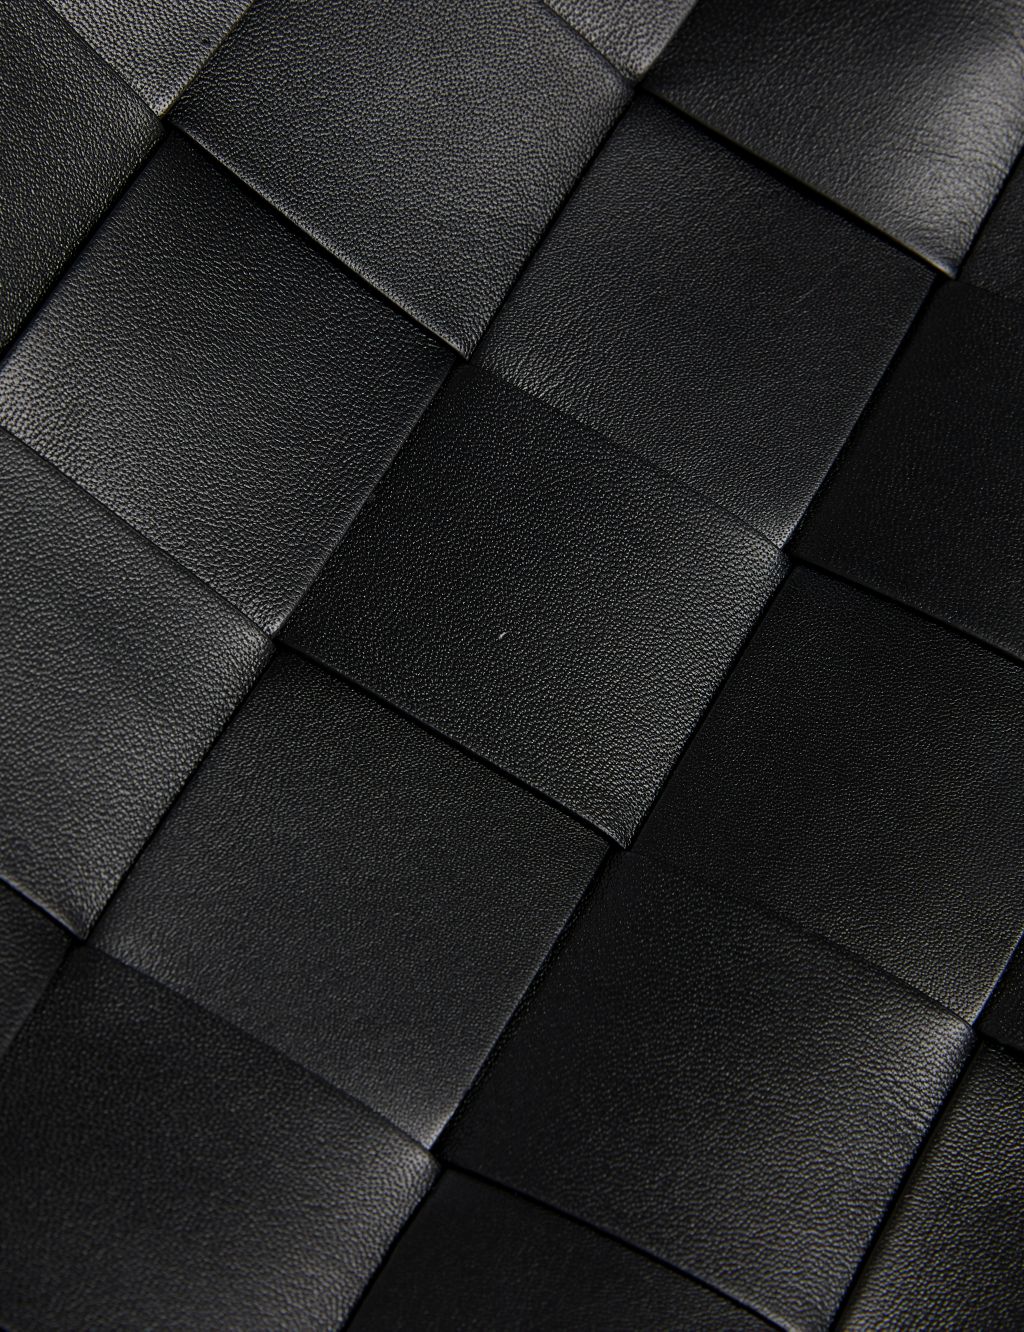 Leather Woven Shoulder Bag image 2